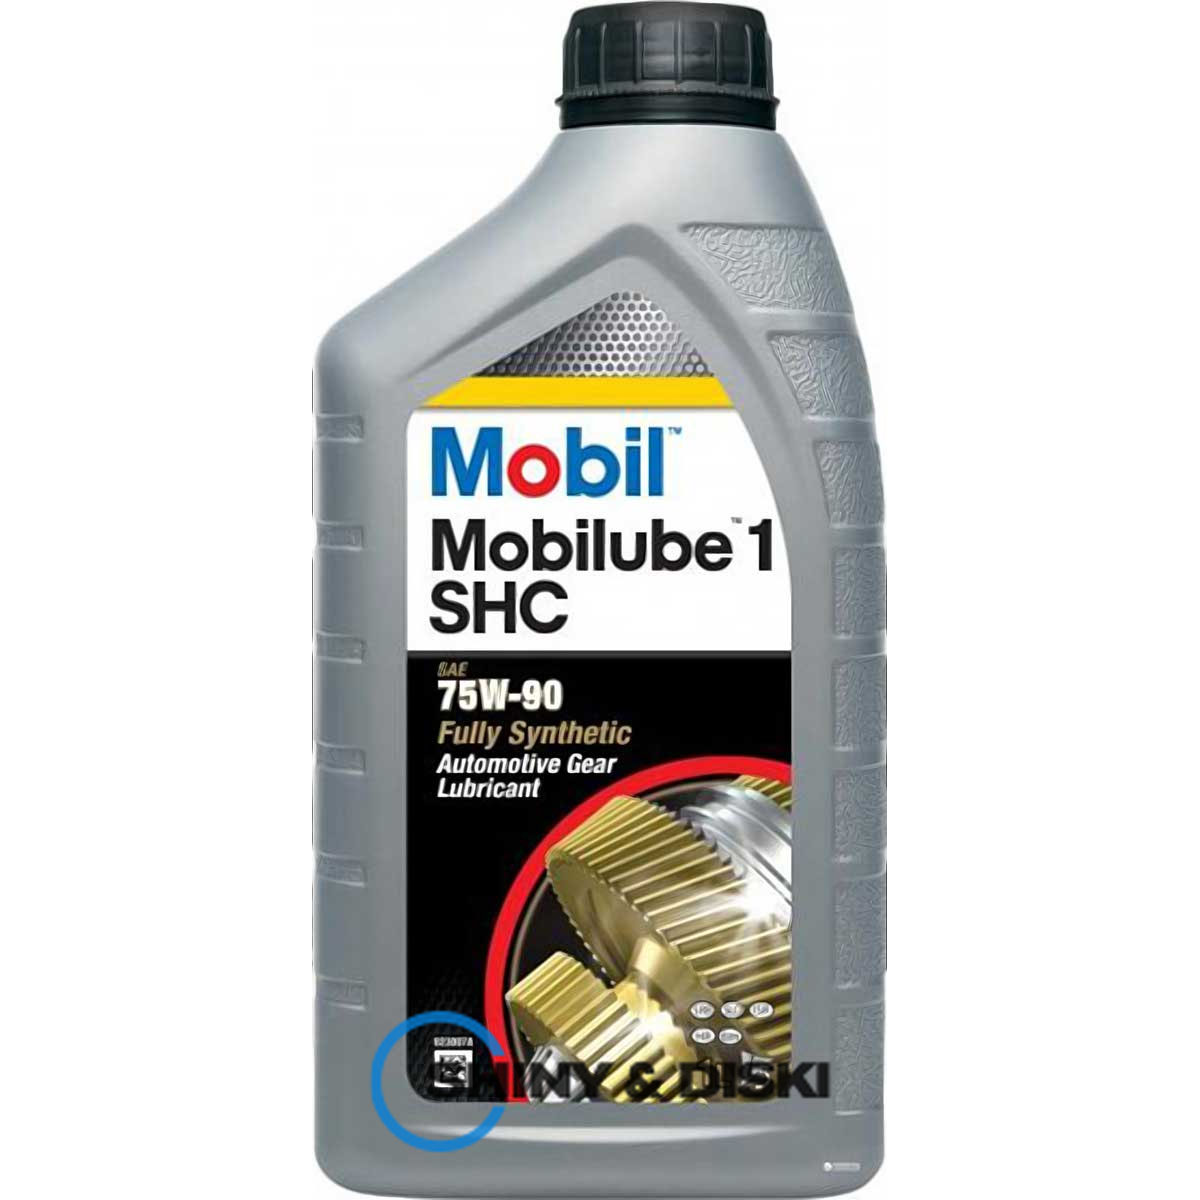 mobil mobilube 1 shc 75w-90 (1л)